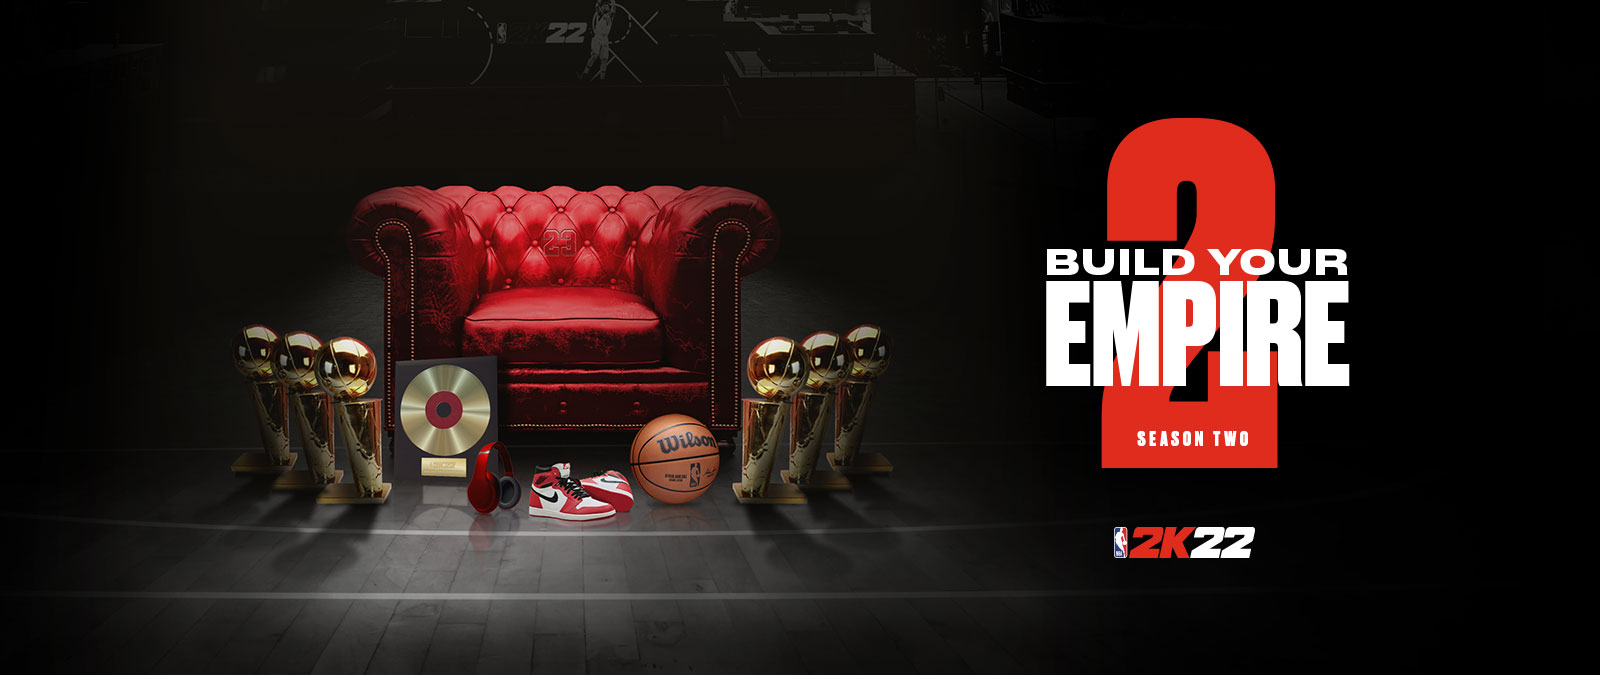 Construa seu império na temporada 2 de NBA 2k22: vários troféus ao redor de uma cadeira de couro vermelha.